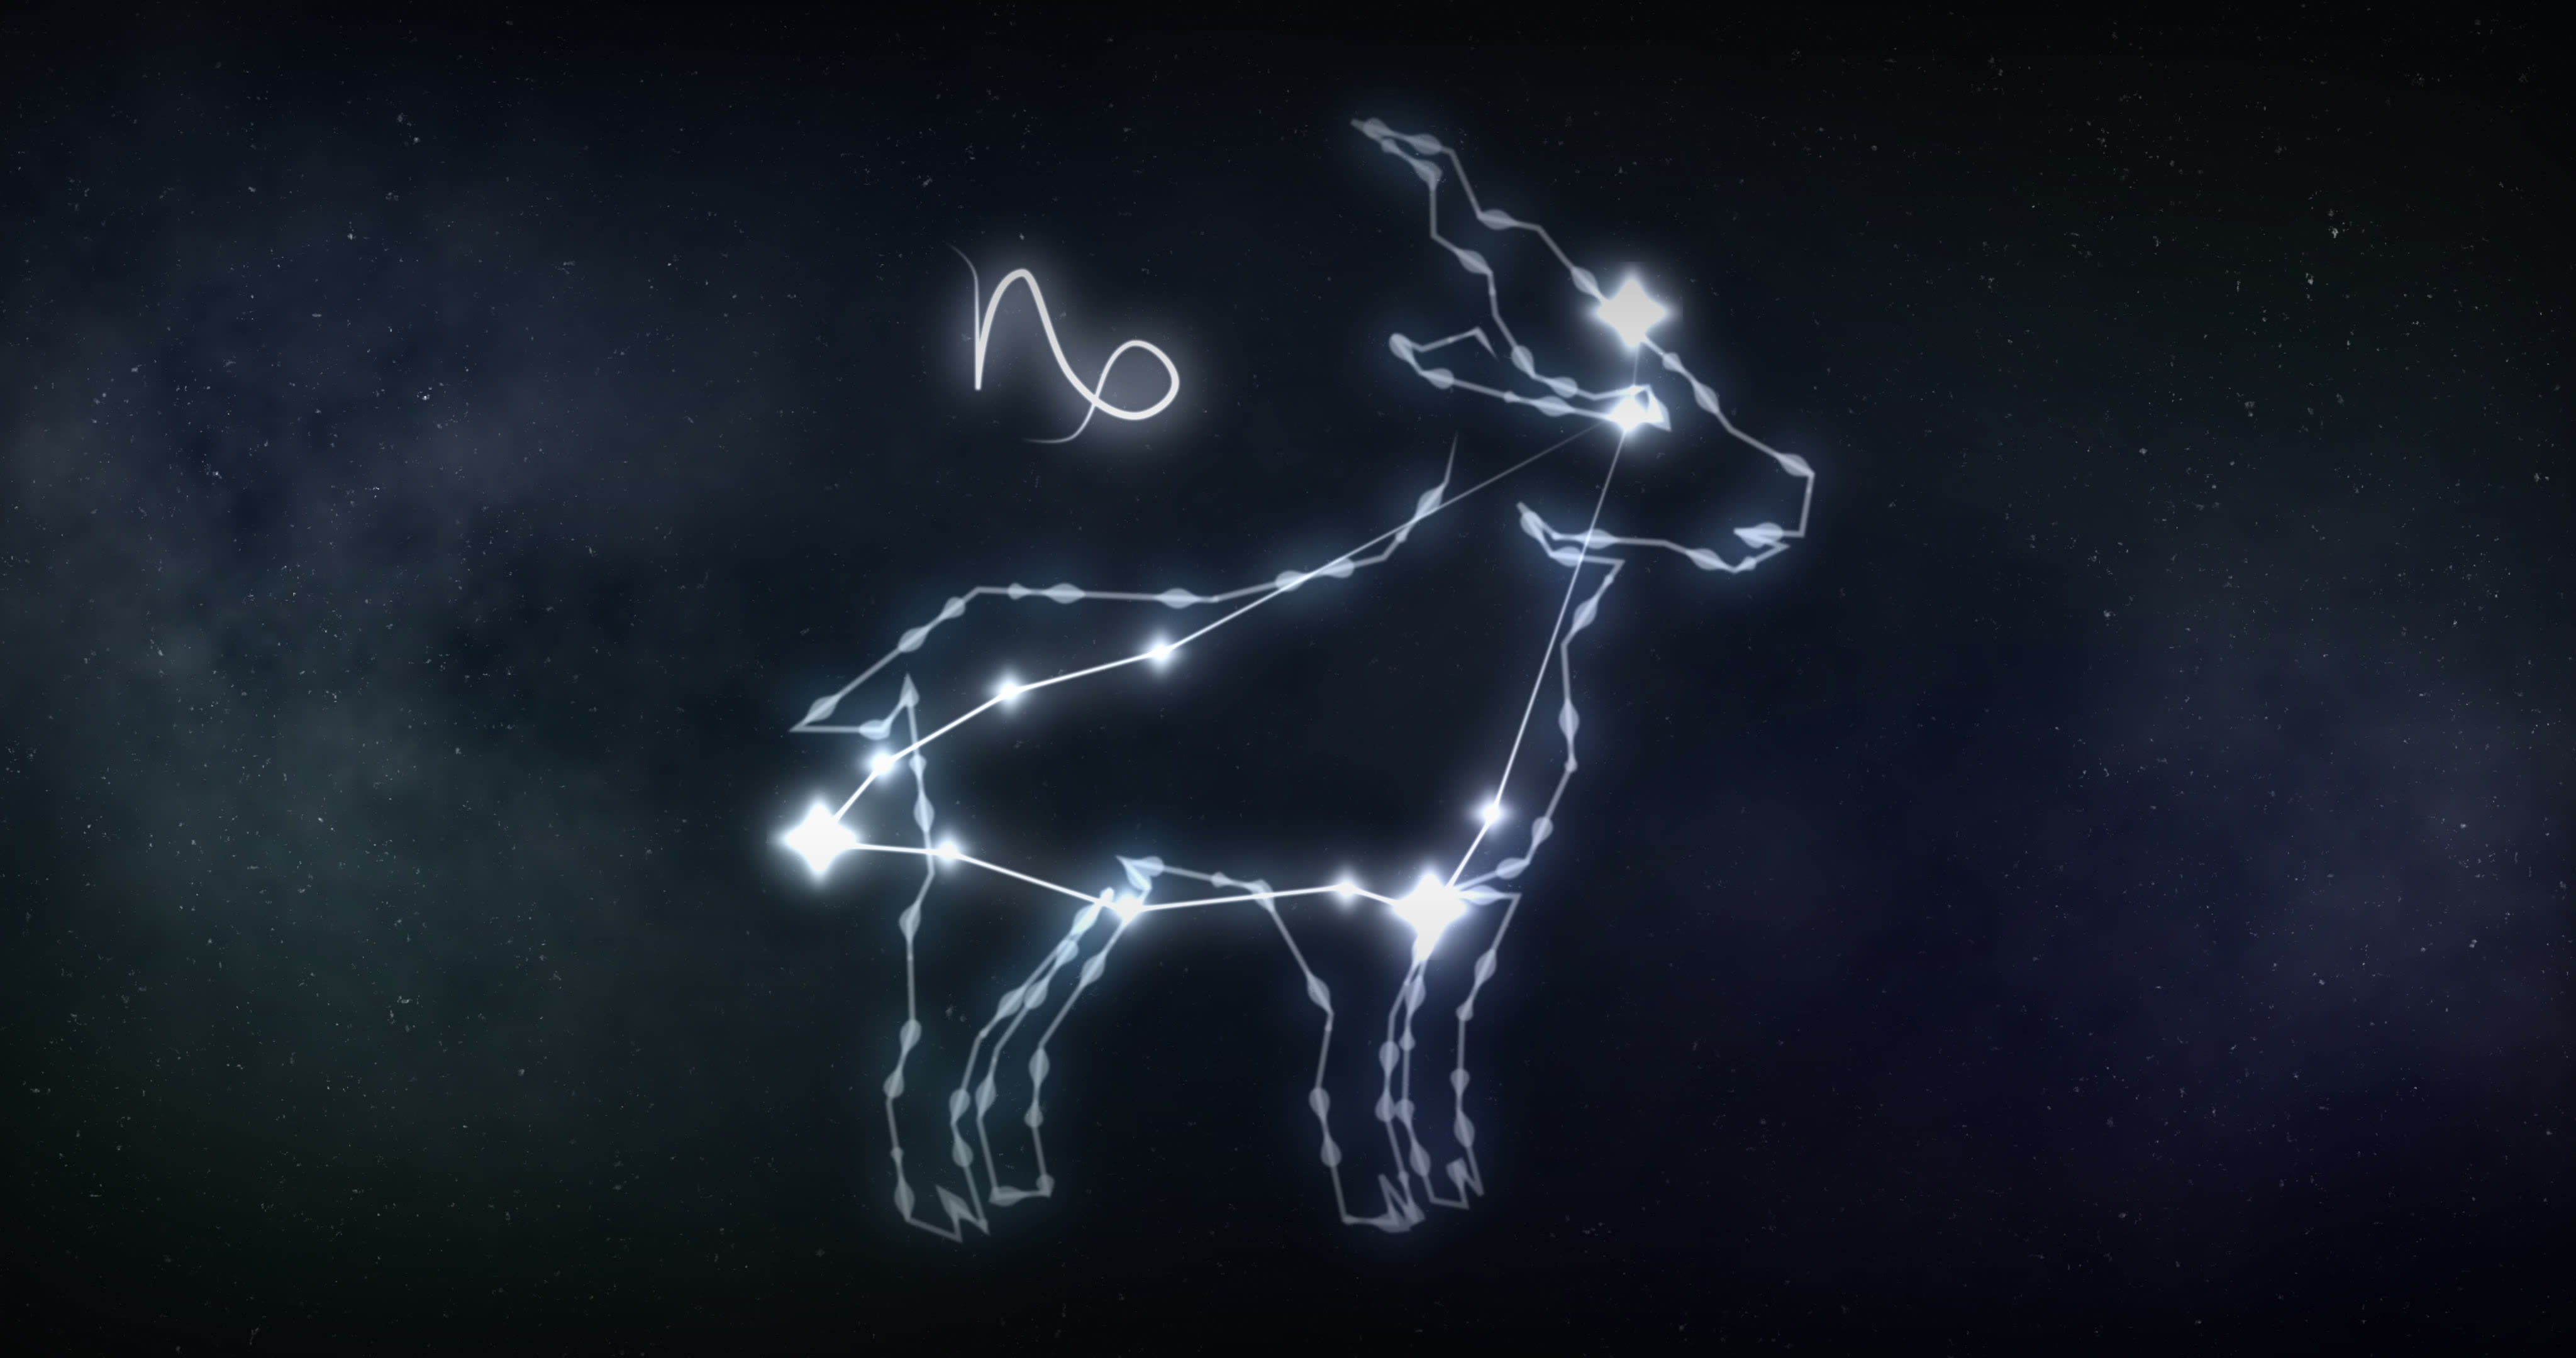  Star sign of Capricorn in a dark sky